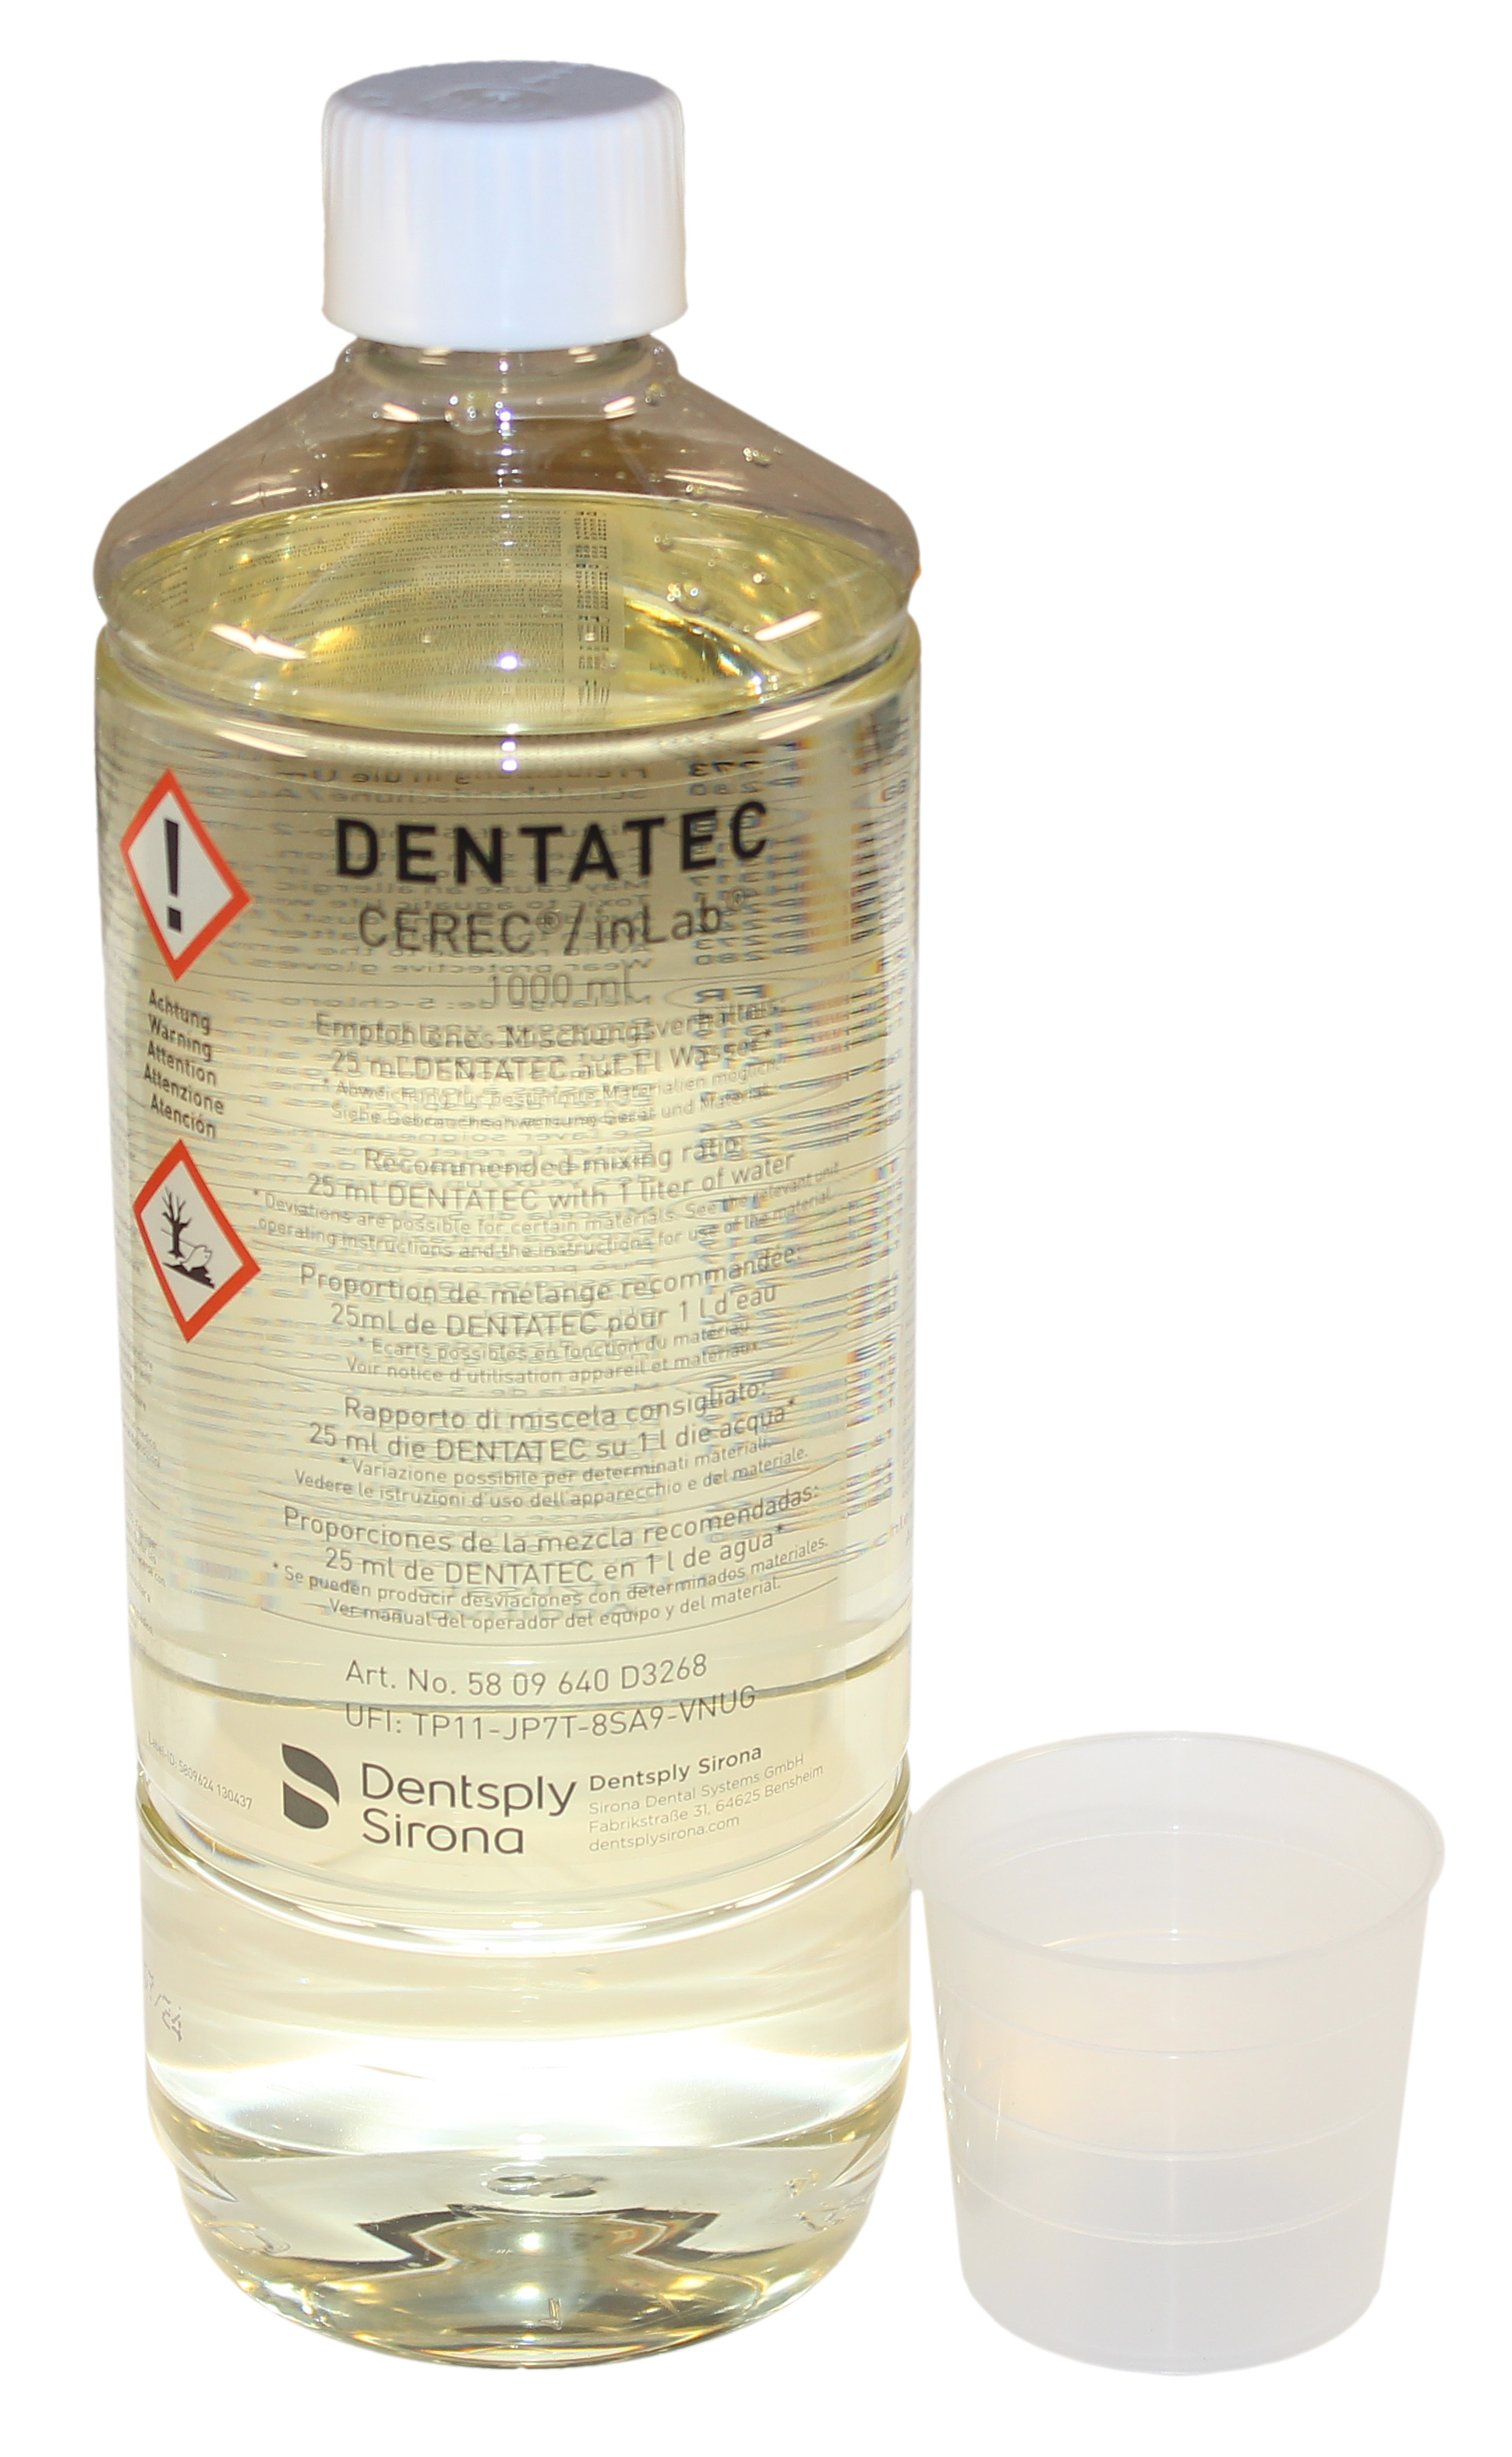 Пеногаситель Dentatec (1000 мл) Dentsply Sirona 5809640